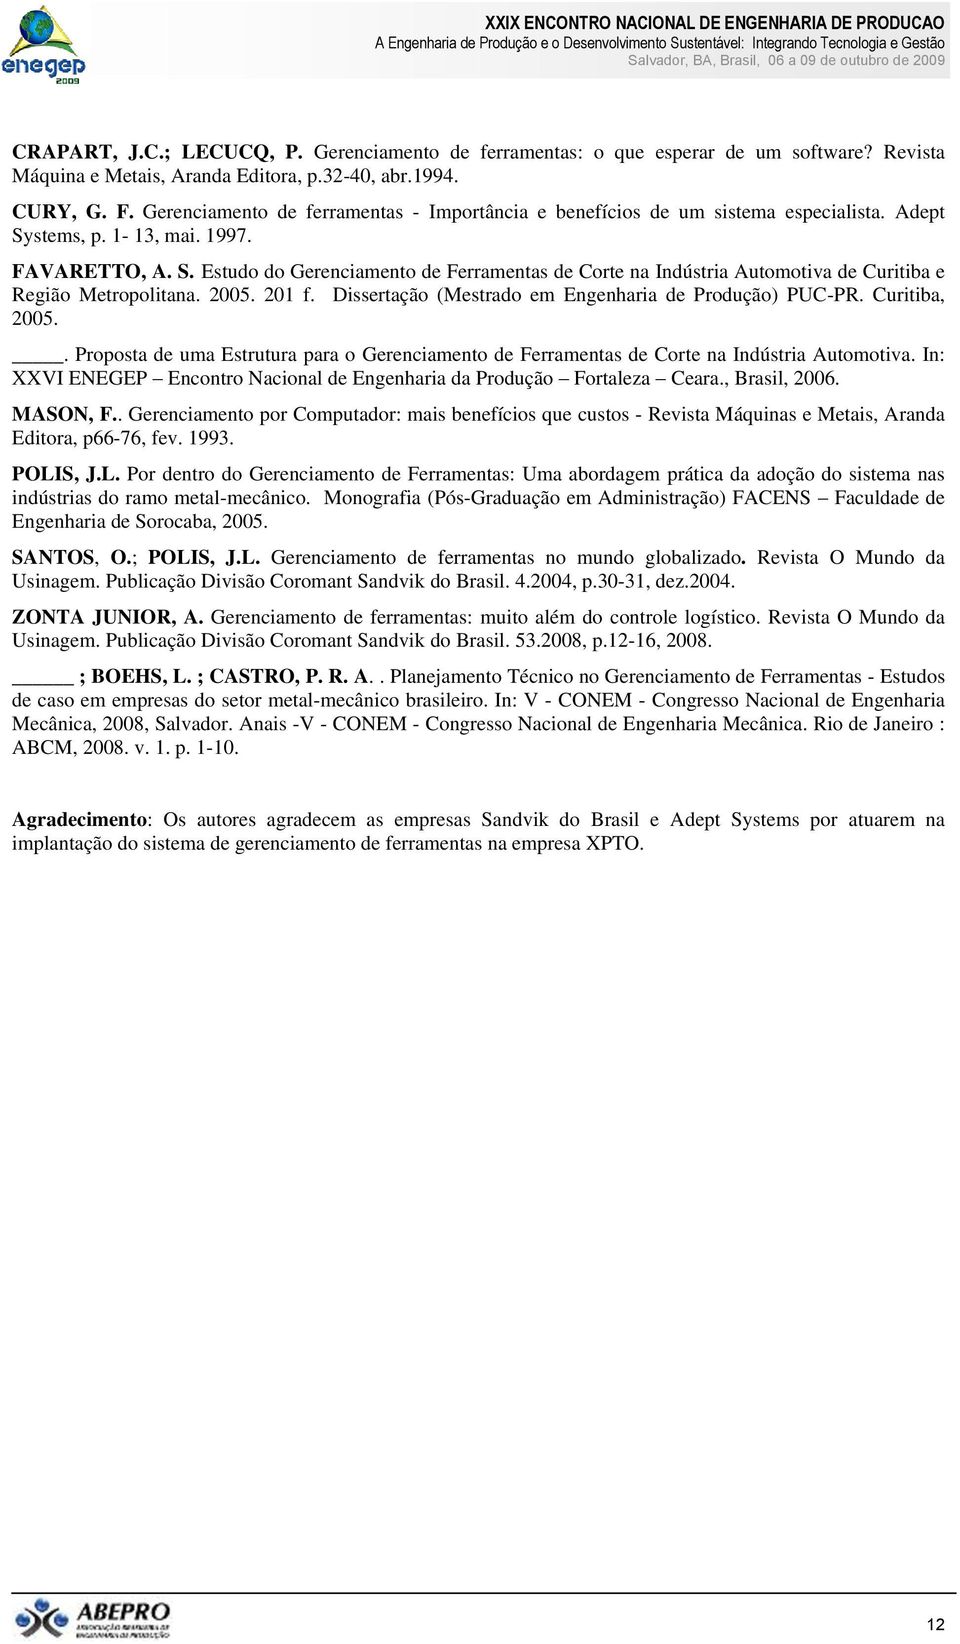 2005. 201 f. Dissertação (Mestrado em Engenharia de Produção) PUC-PR. Curitiba, 2005.. Proposta de uma Estrutura para o Gerenciamento de Ferramentas de Corte na Indústria Automotiva.